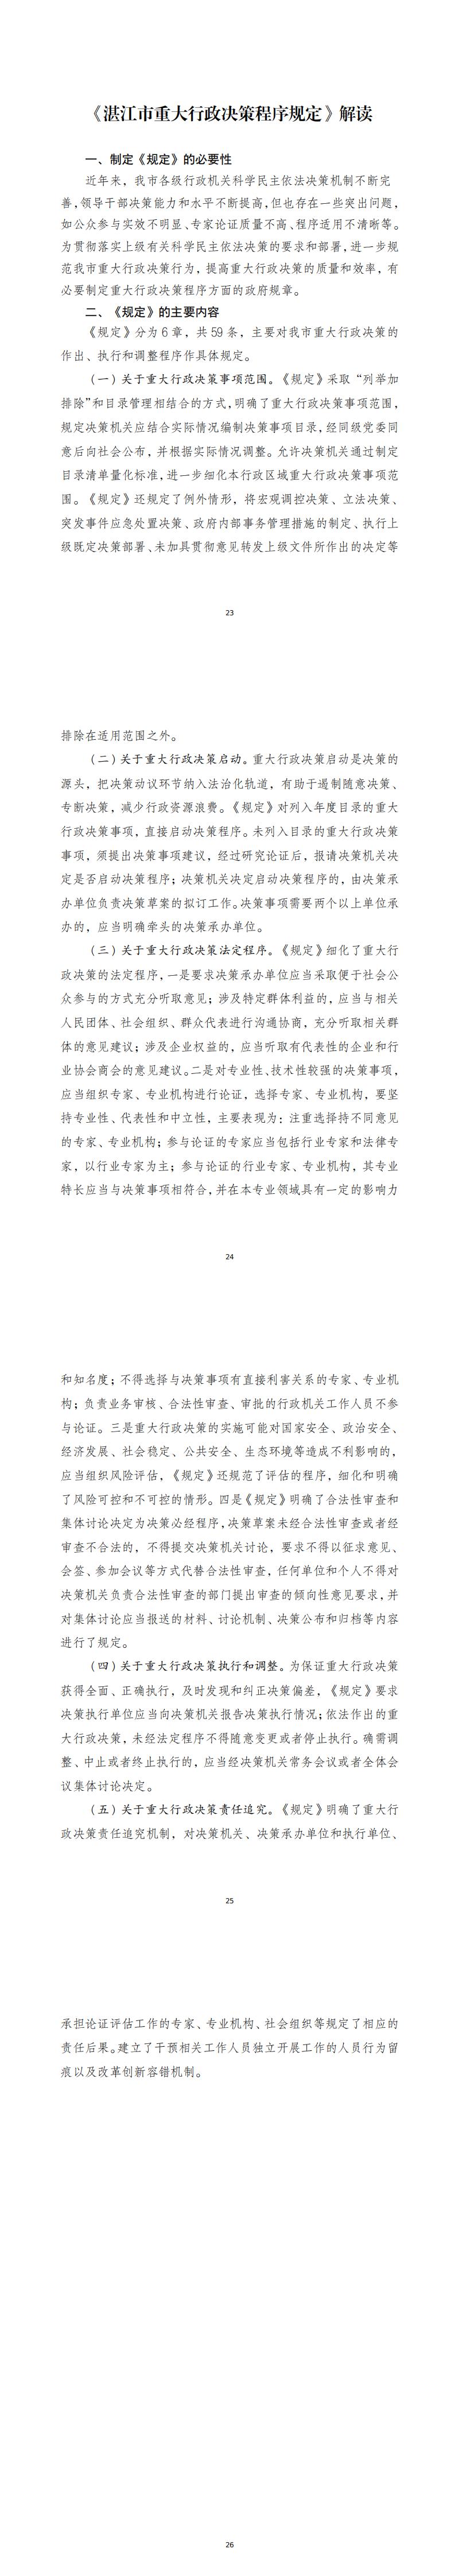 《湛江市重大行政决策程序规定》政策解读_0.jpg